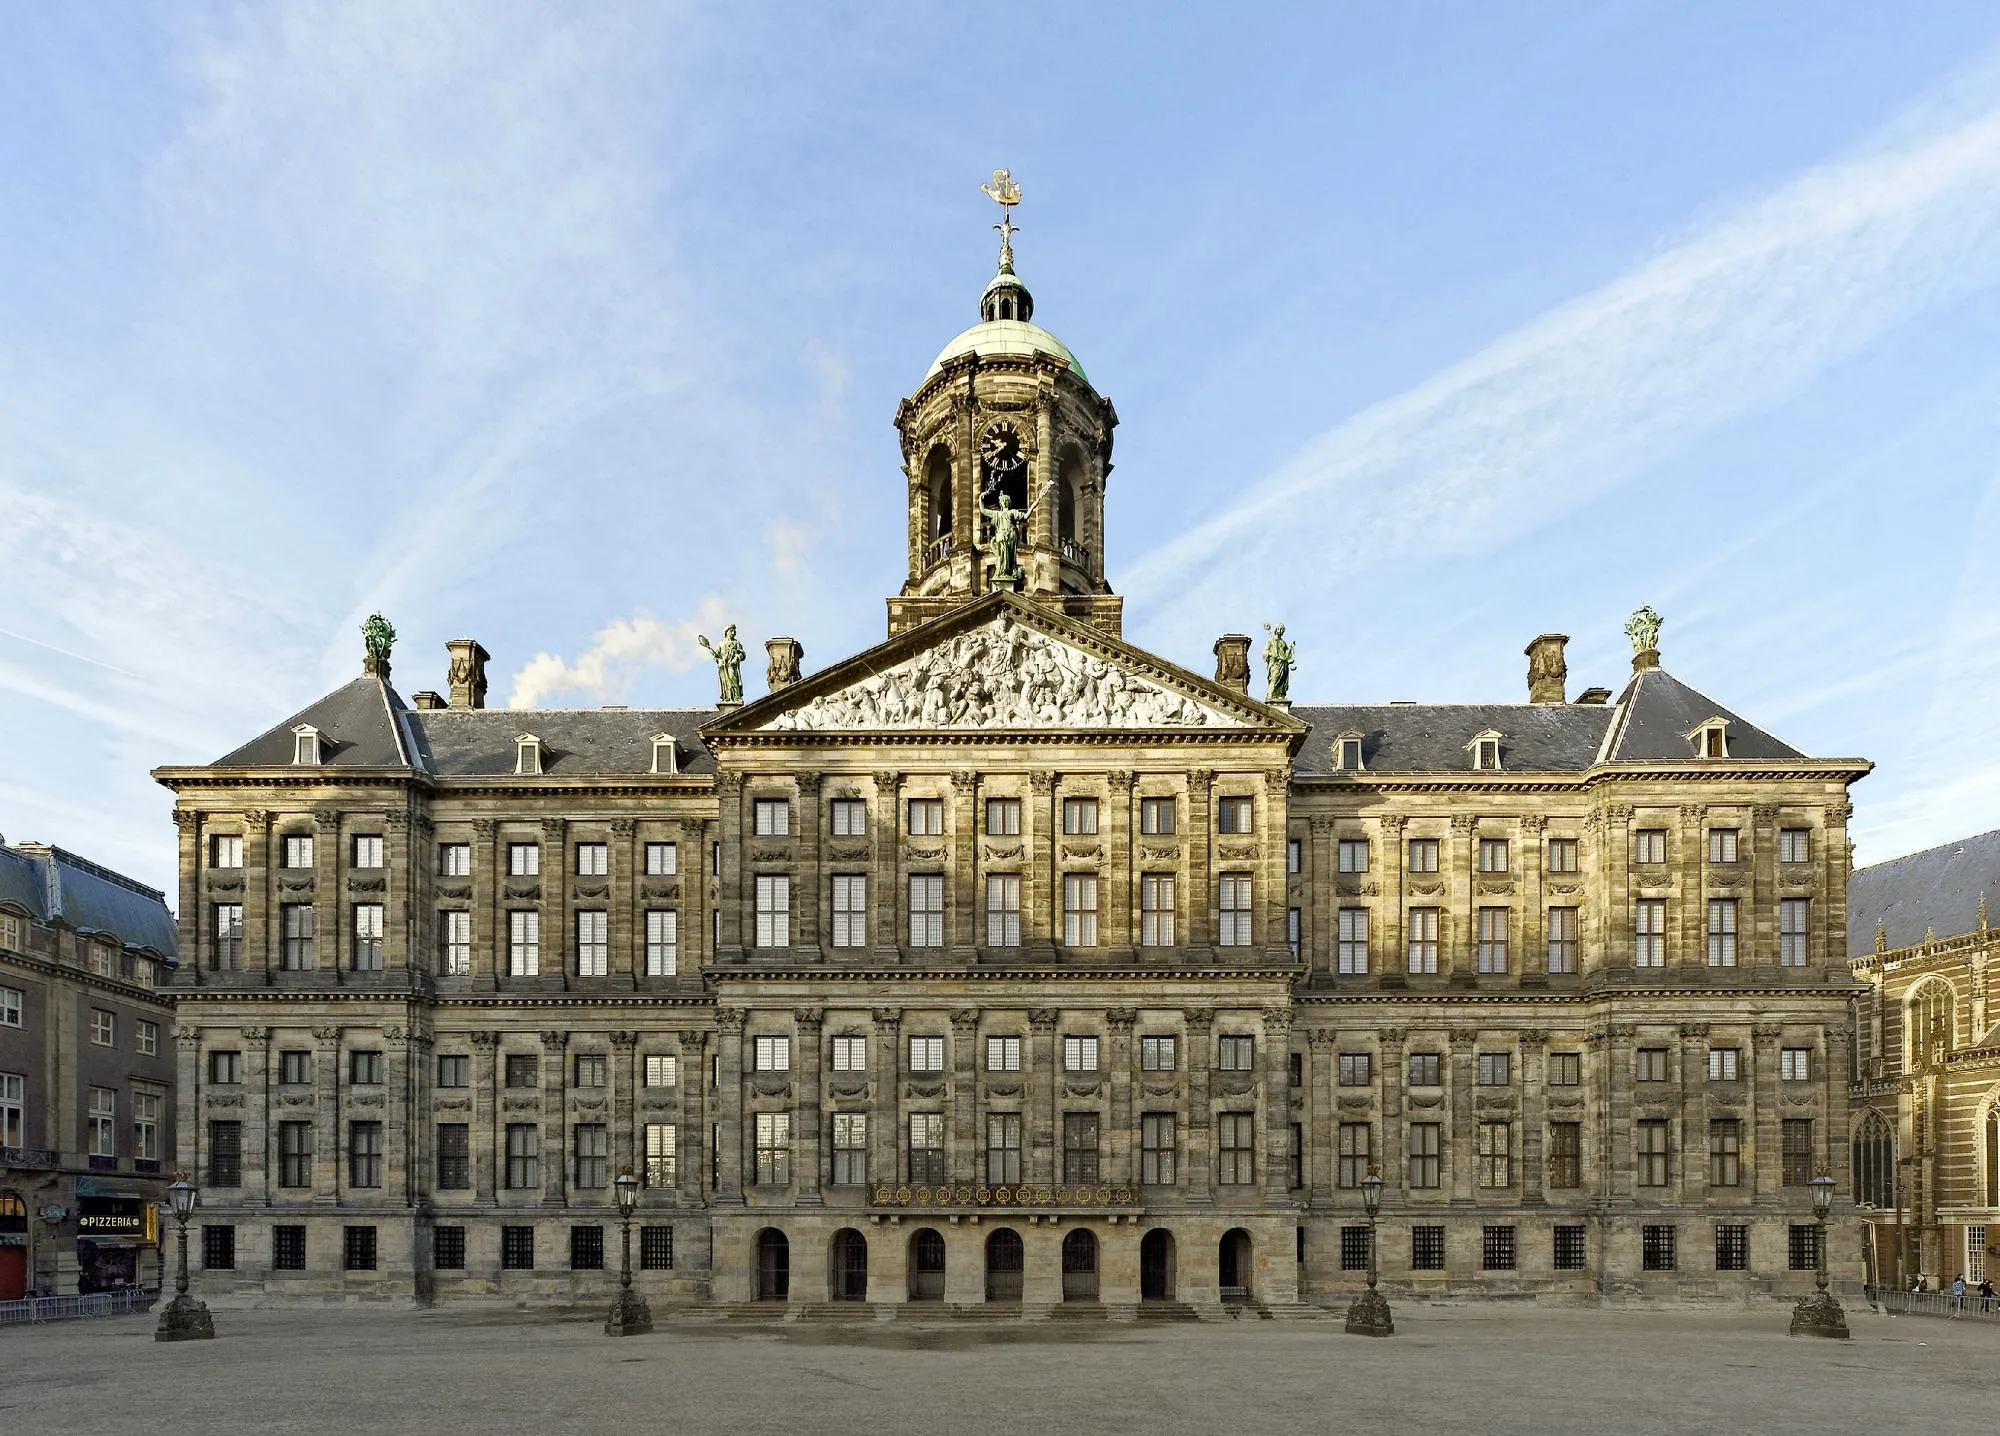 القصر الملكي في أمستردام